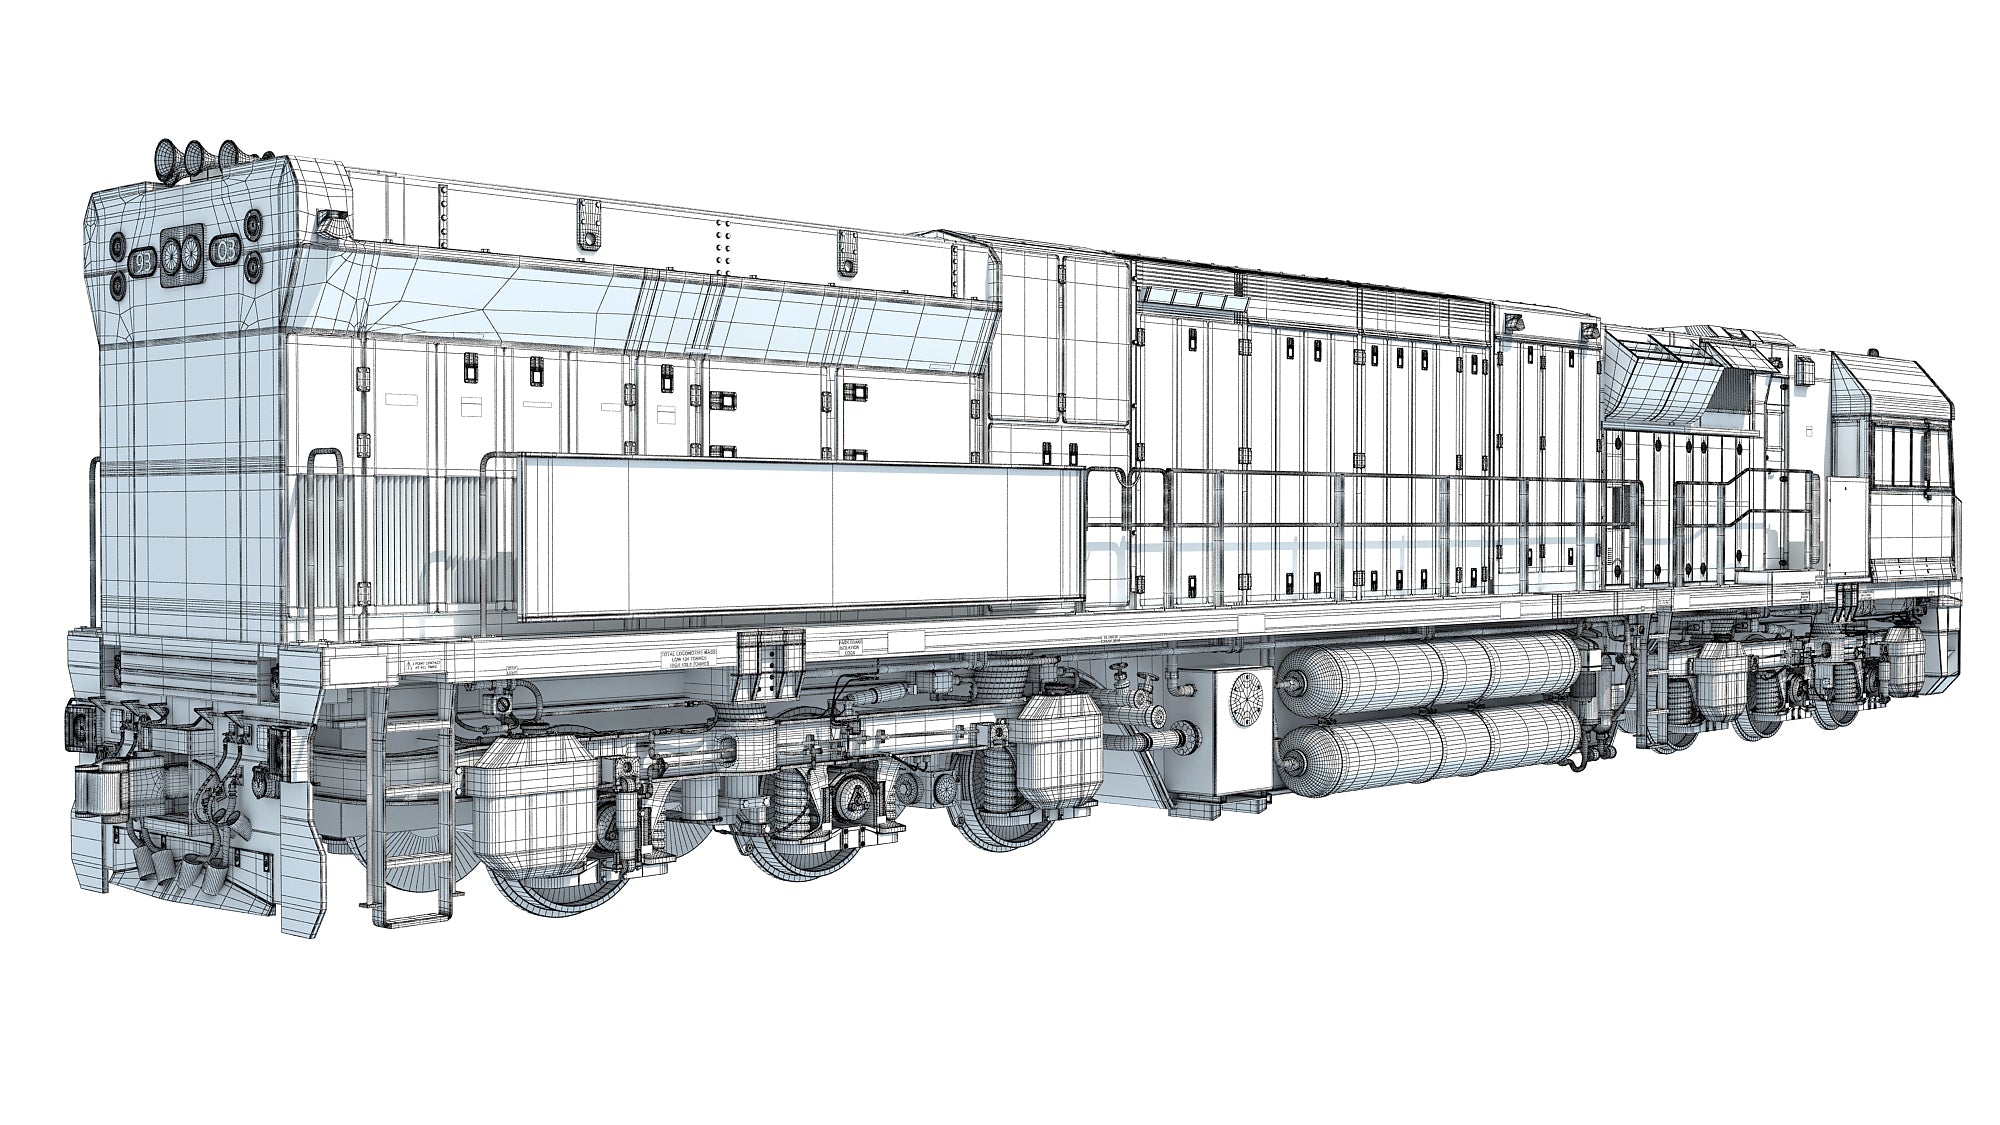 Electric Locomotive C44aci